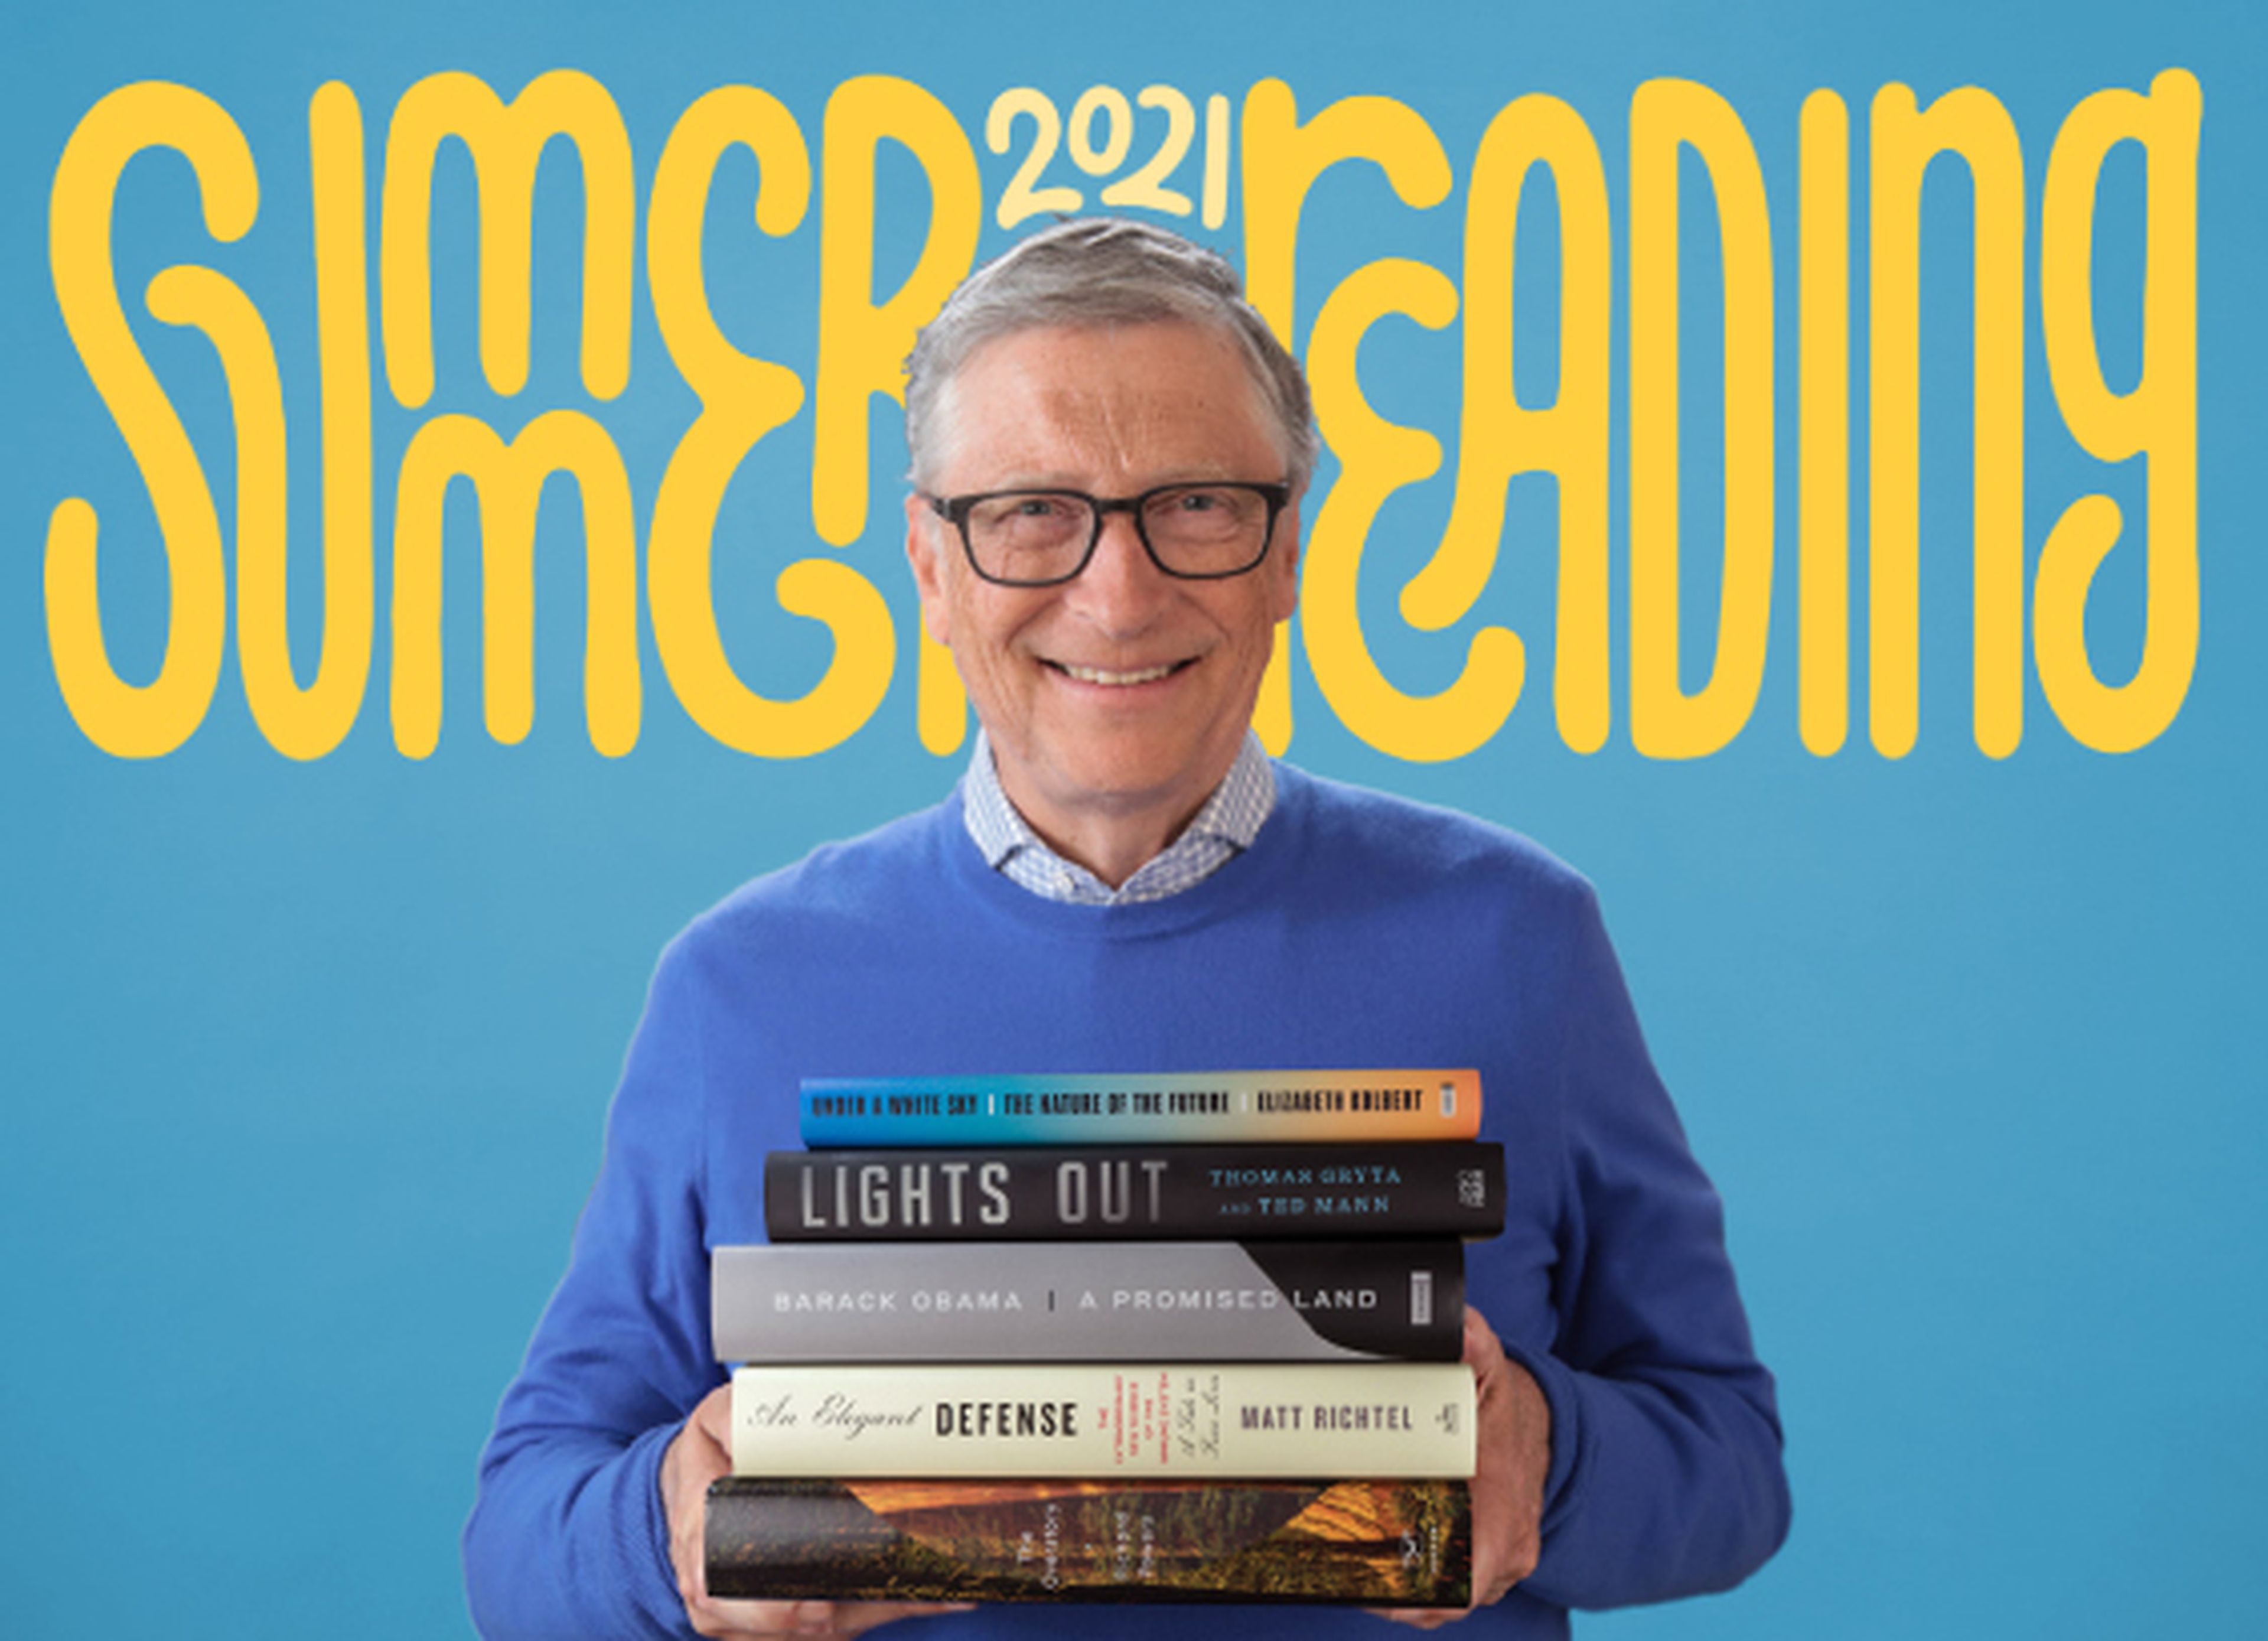 Recomendación personal de libros para leer en verano de Bill Gates.